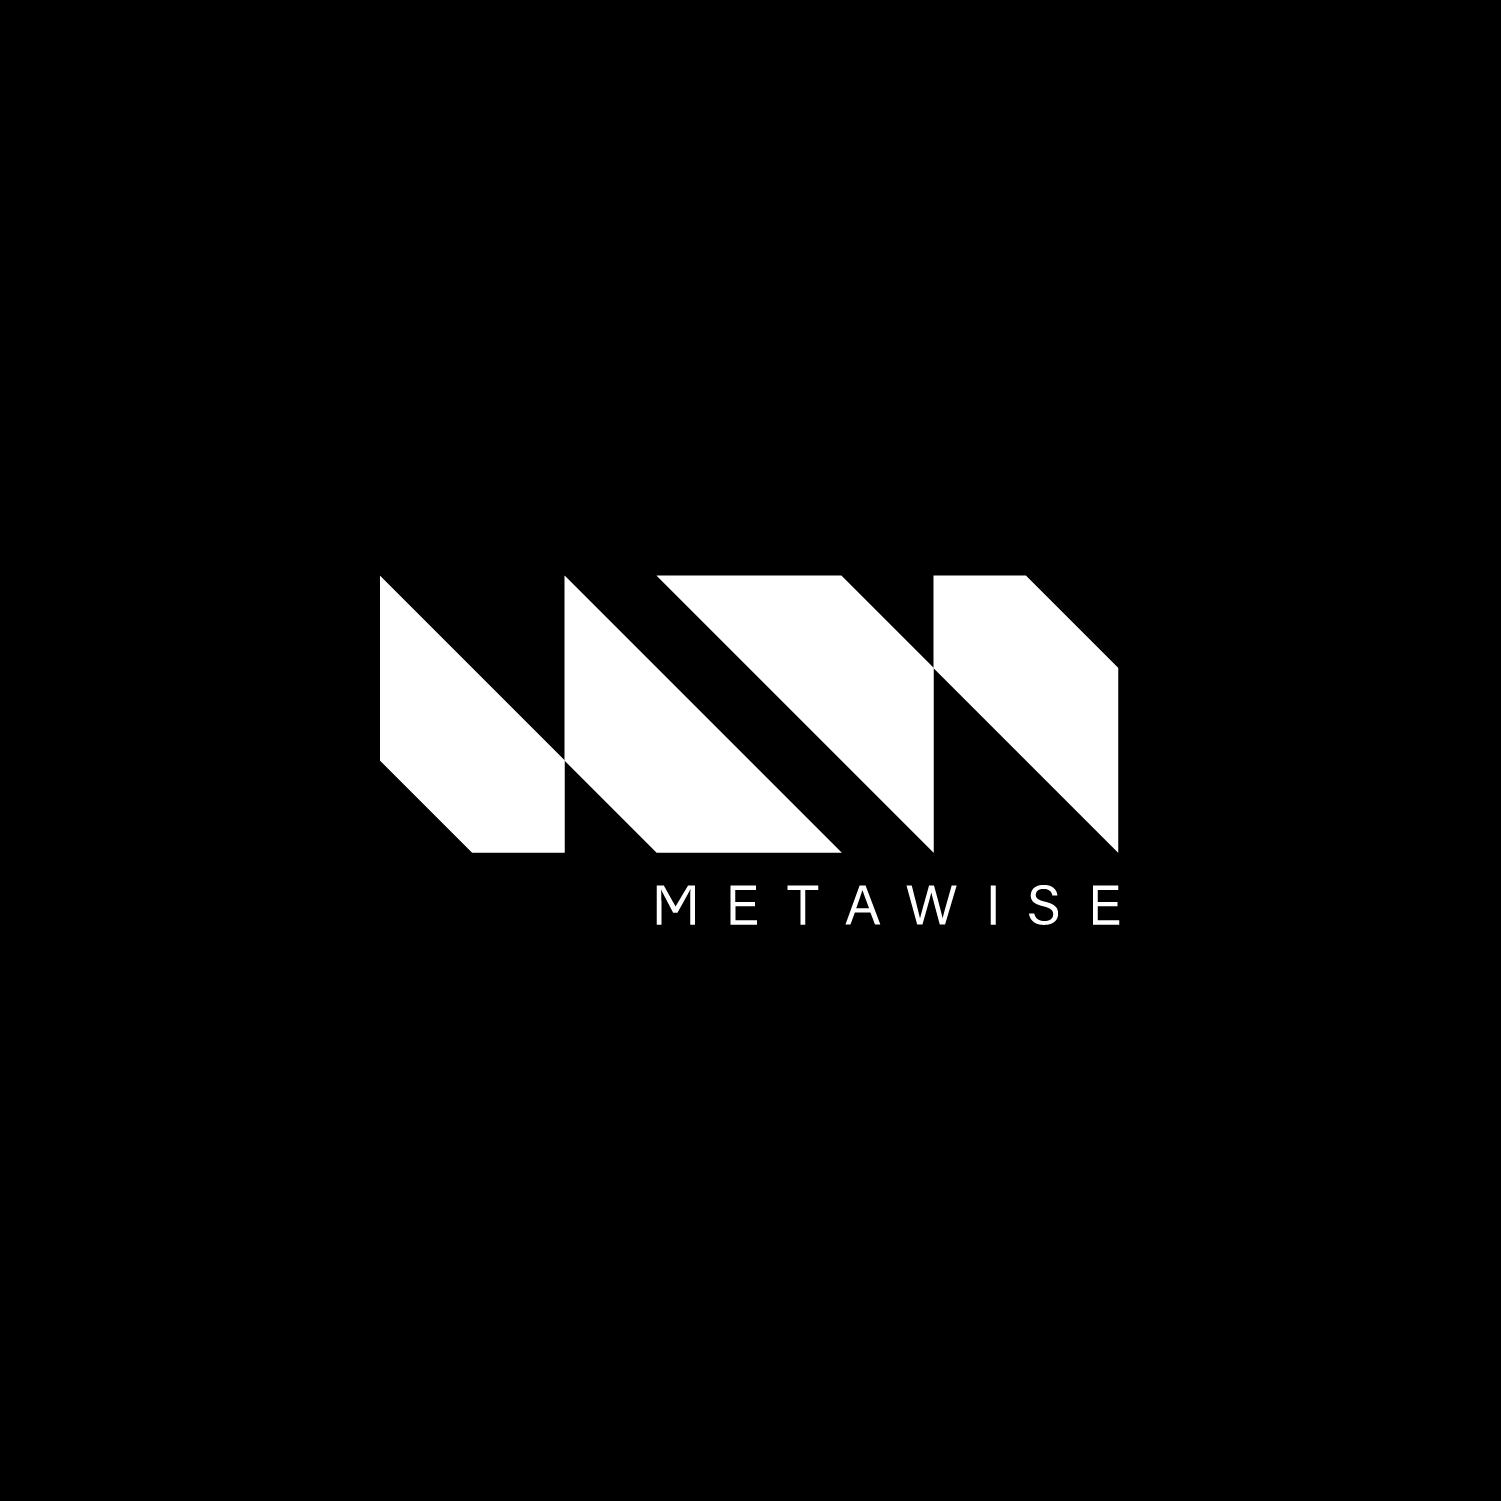 Metawise